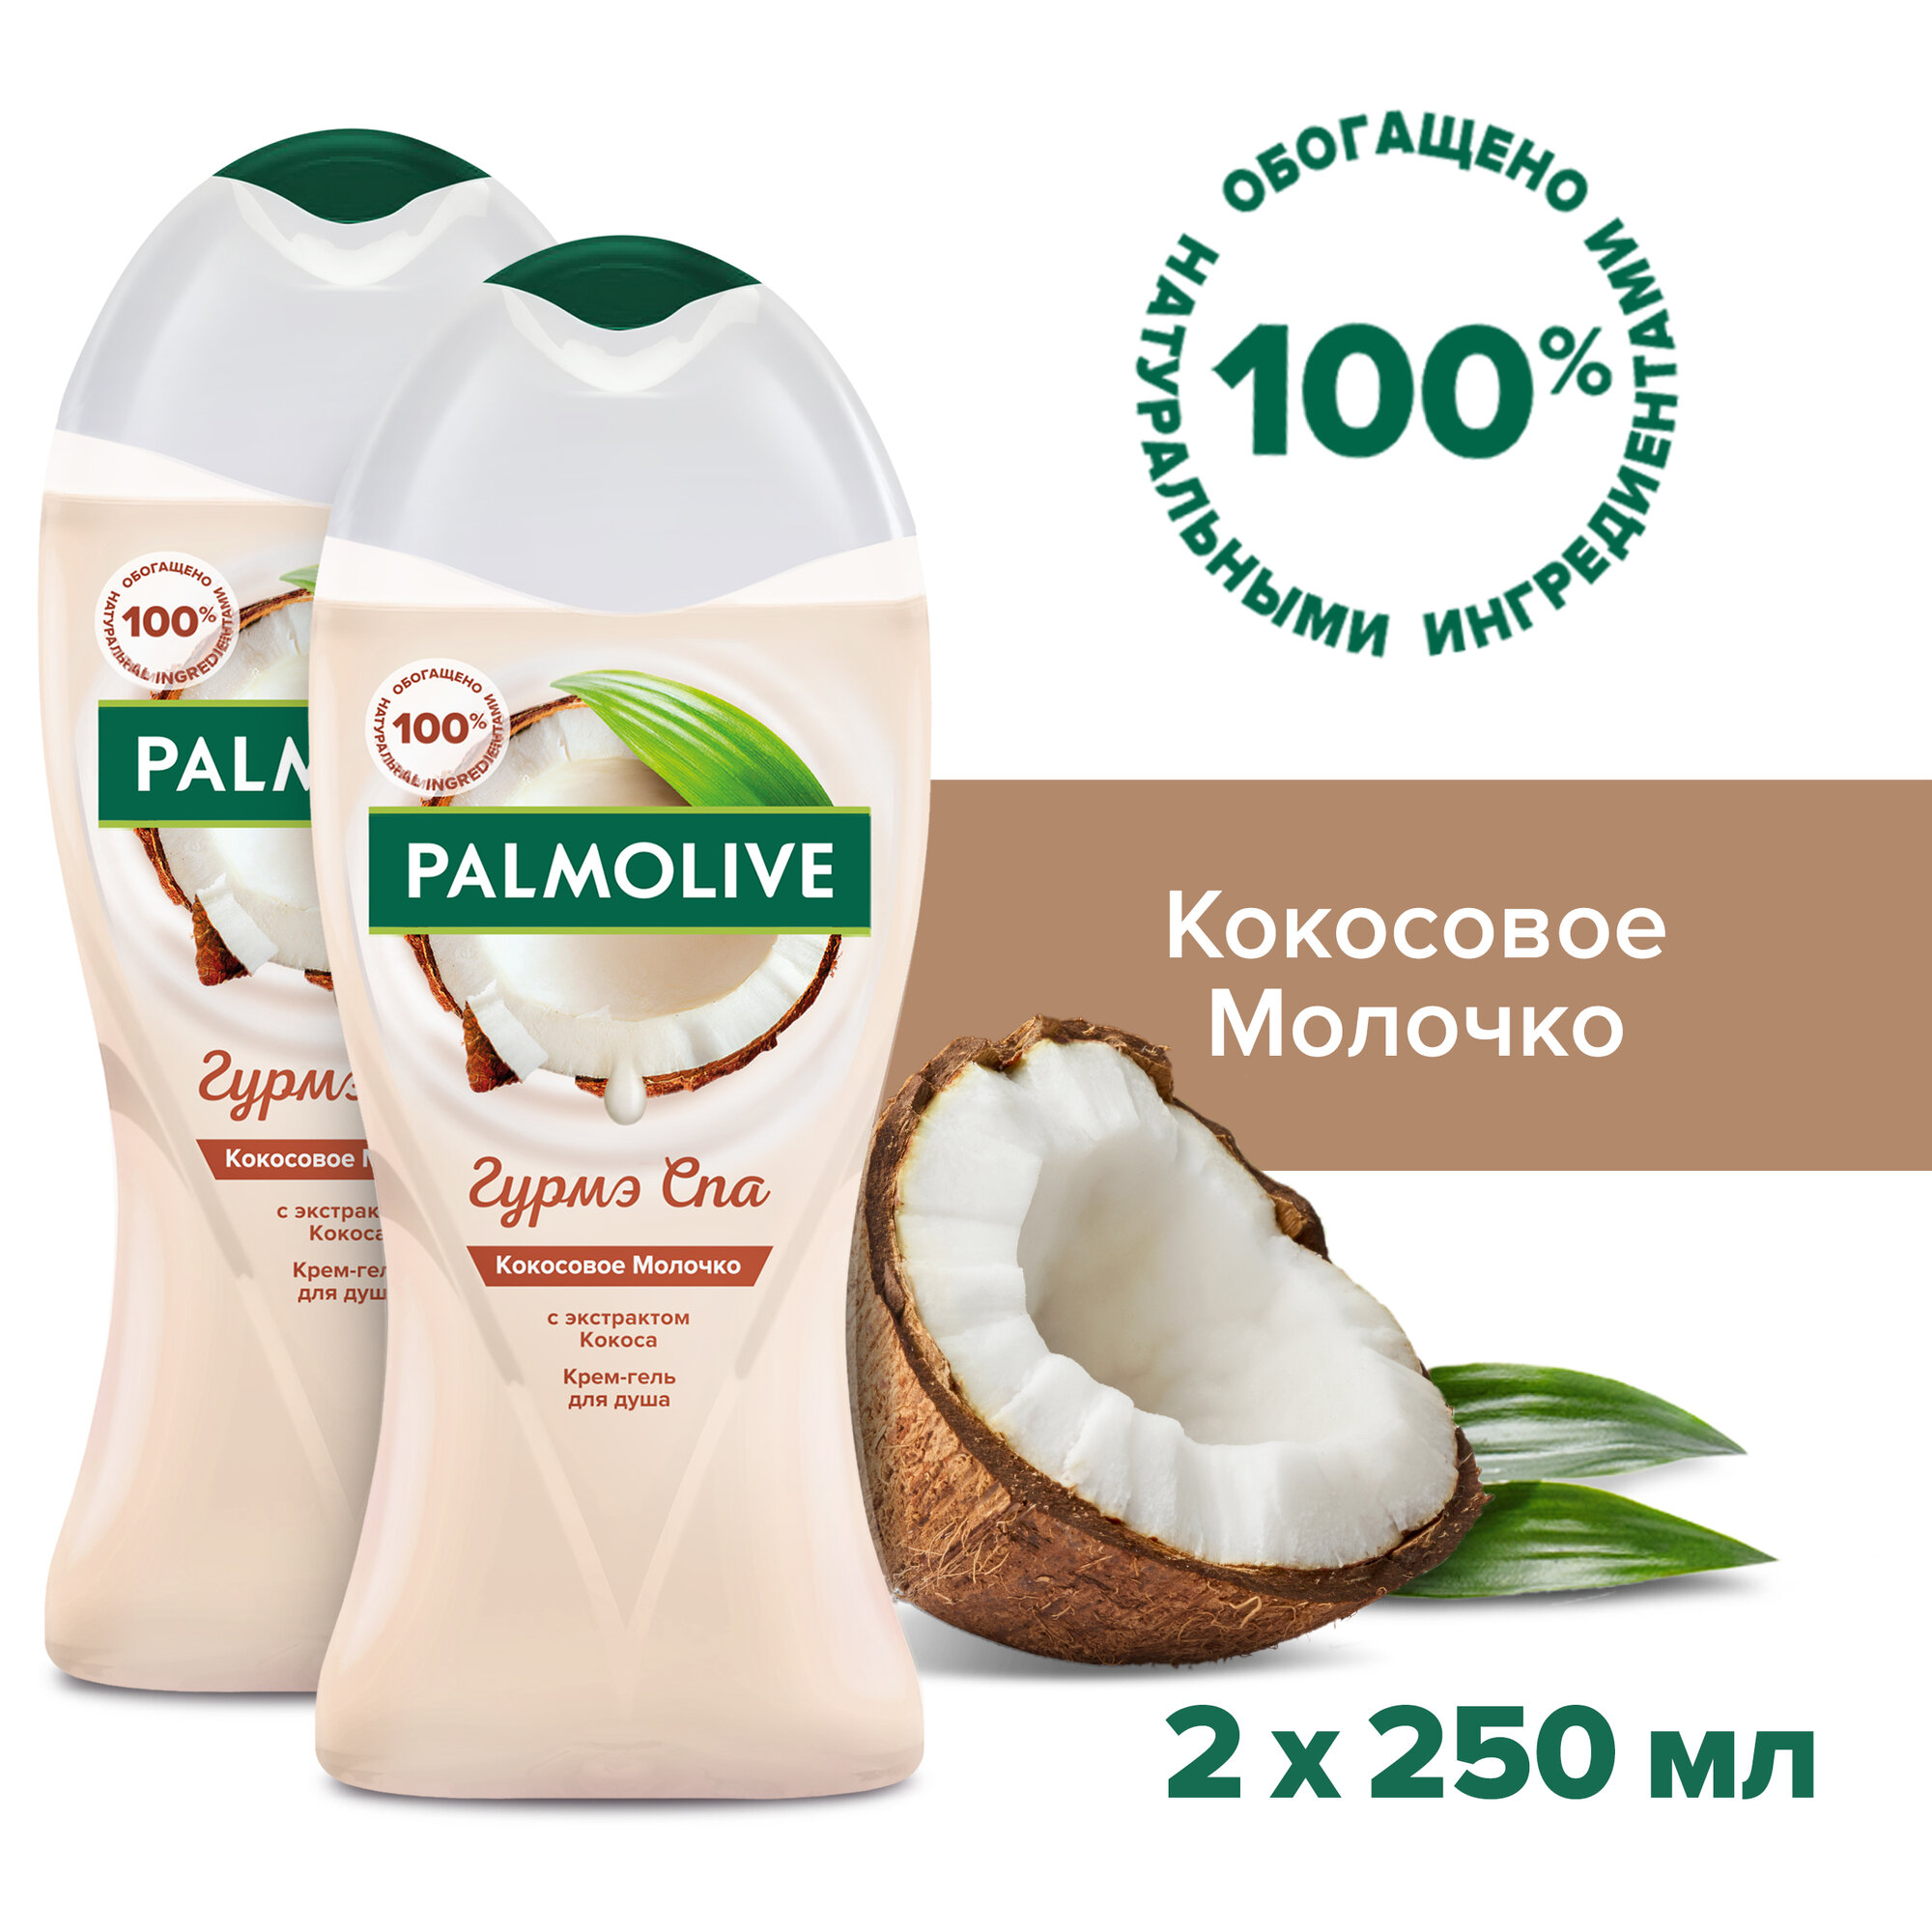 Palmolive Гурмэ СПА Кокосовое Молочко женский крем - гель для душа с экстрактом Кокоса 250 мл ( 2 шт )